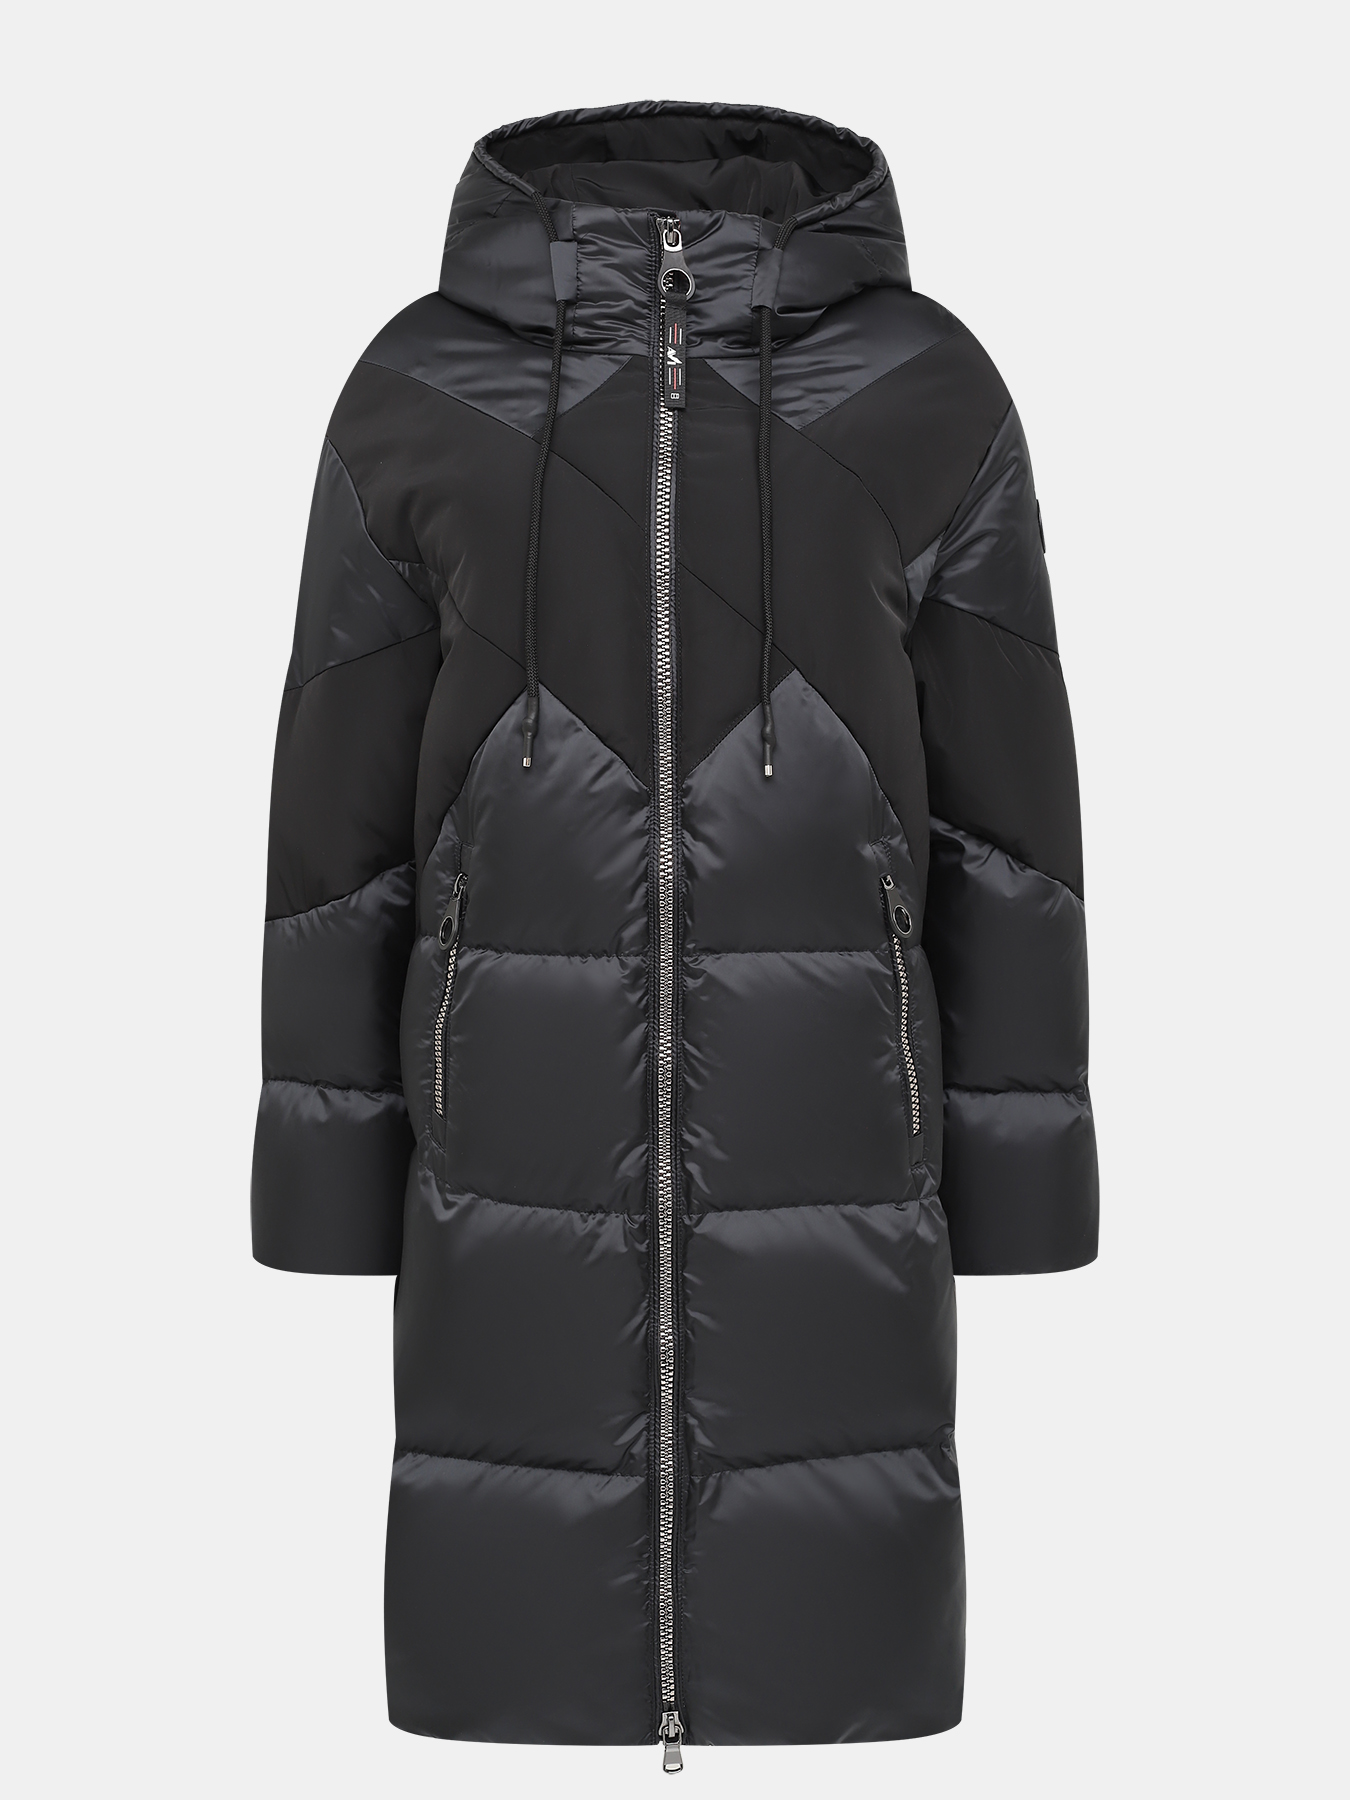 Пальто зимнее AVI 433593-021, цвет черный, размер 46